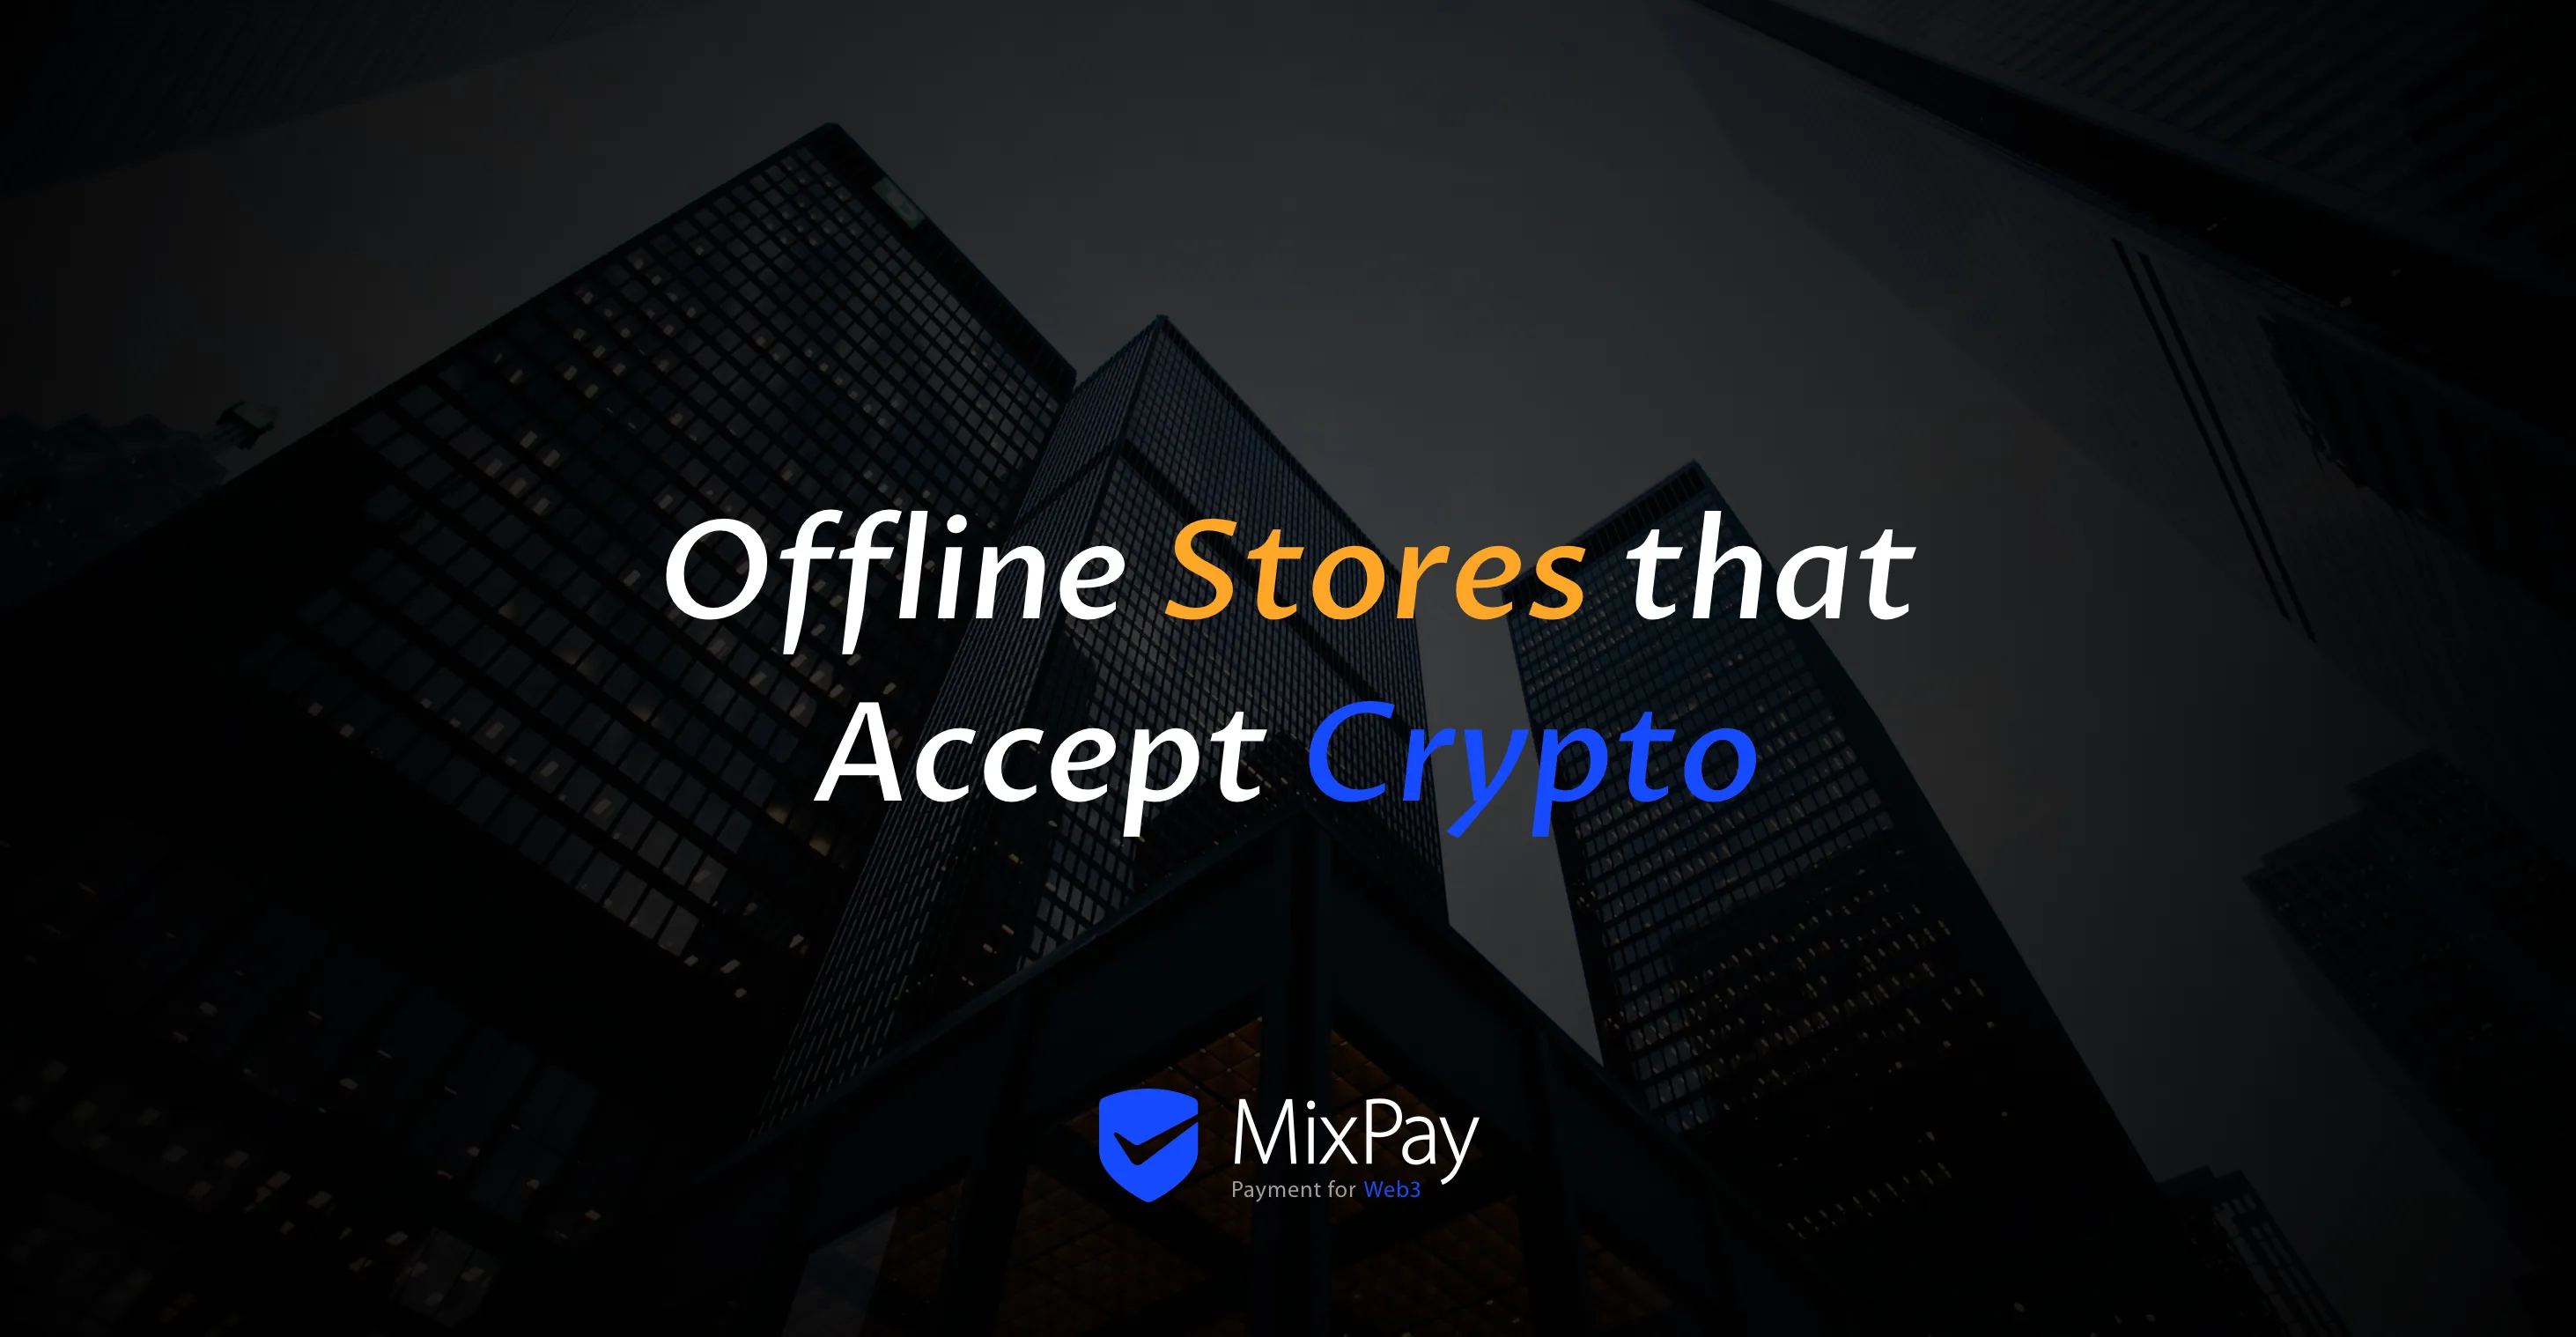 Negozi offline che accettano criptovalute con MixPay